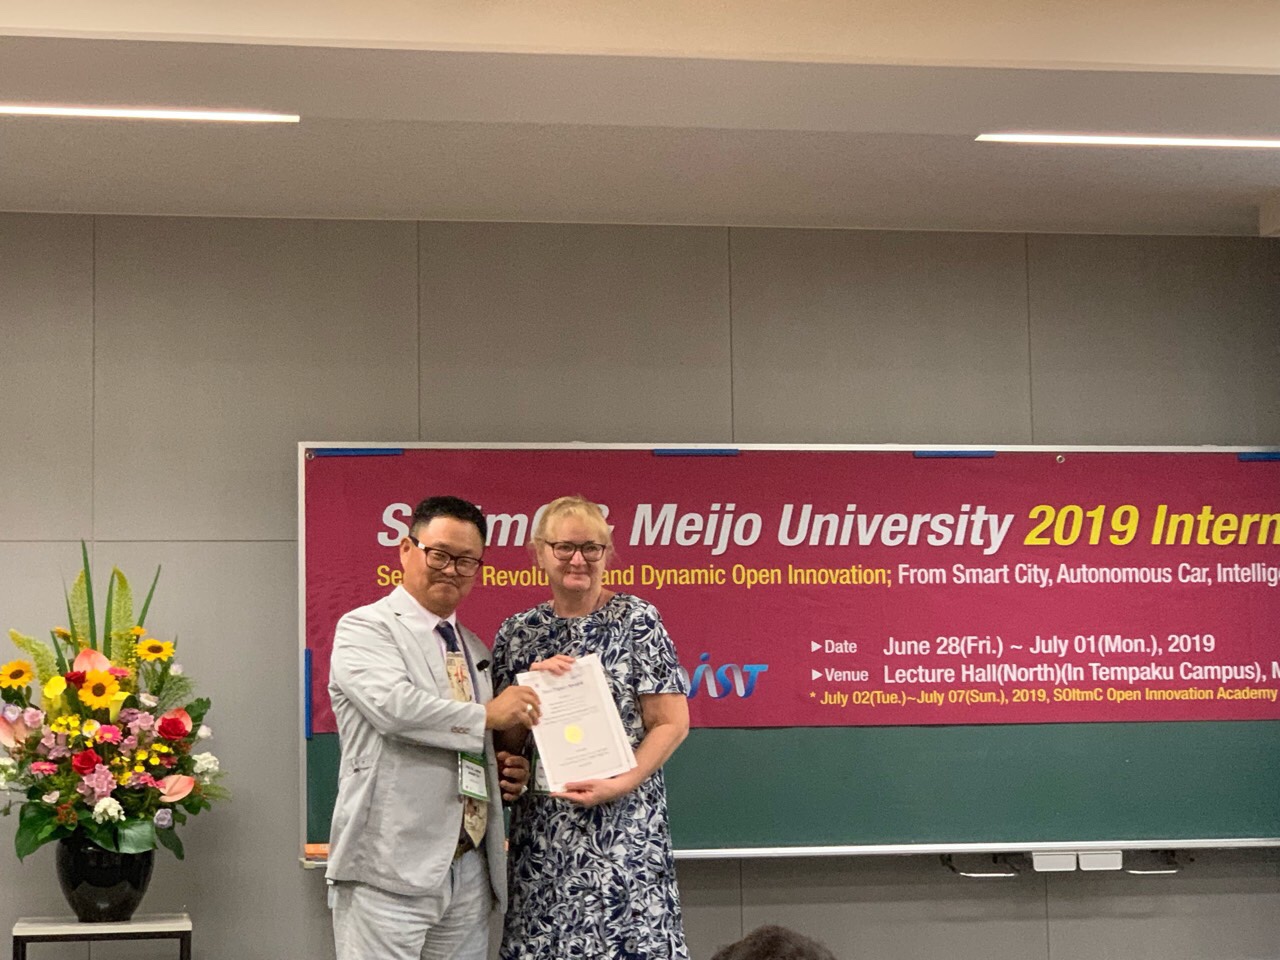 SOItmC & Meijo University 2019